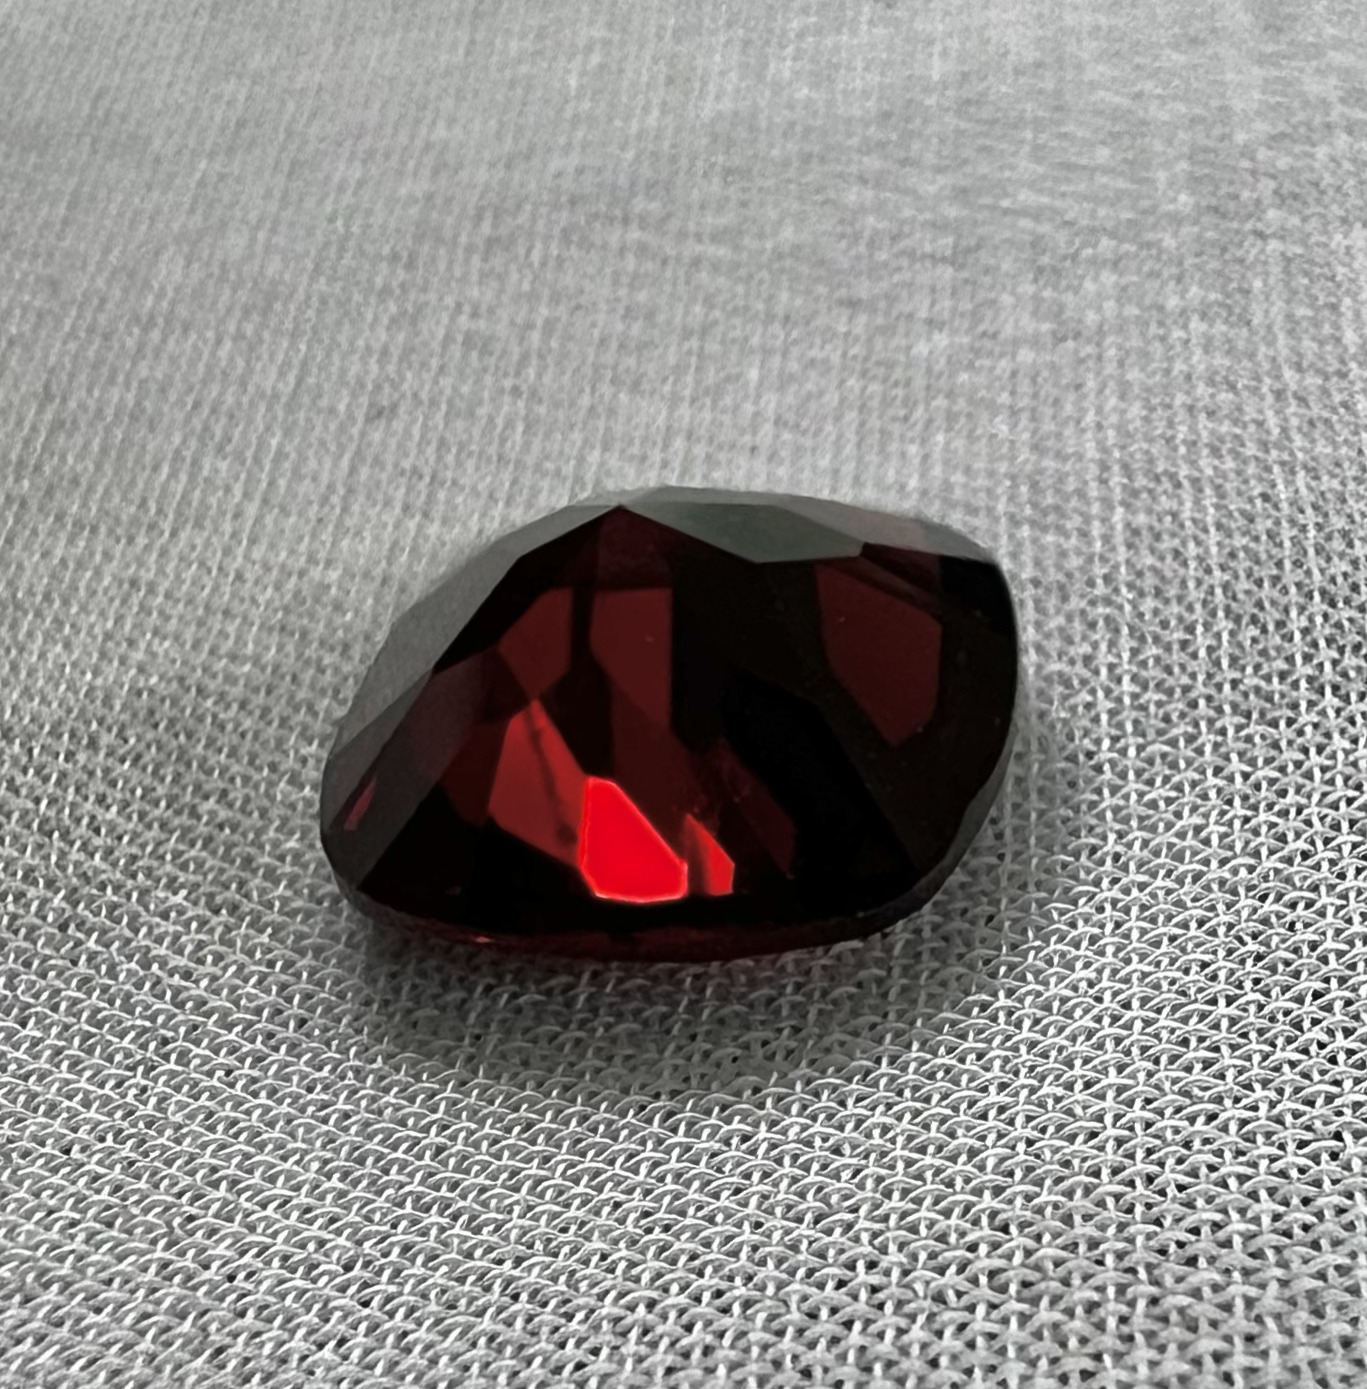 Granate Rojo-2.135ct-7.8x7.7x3.6mm